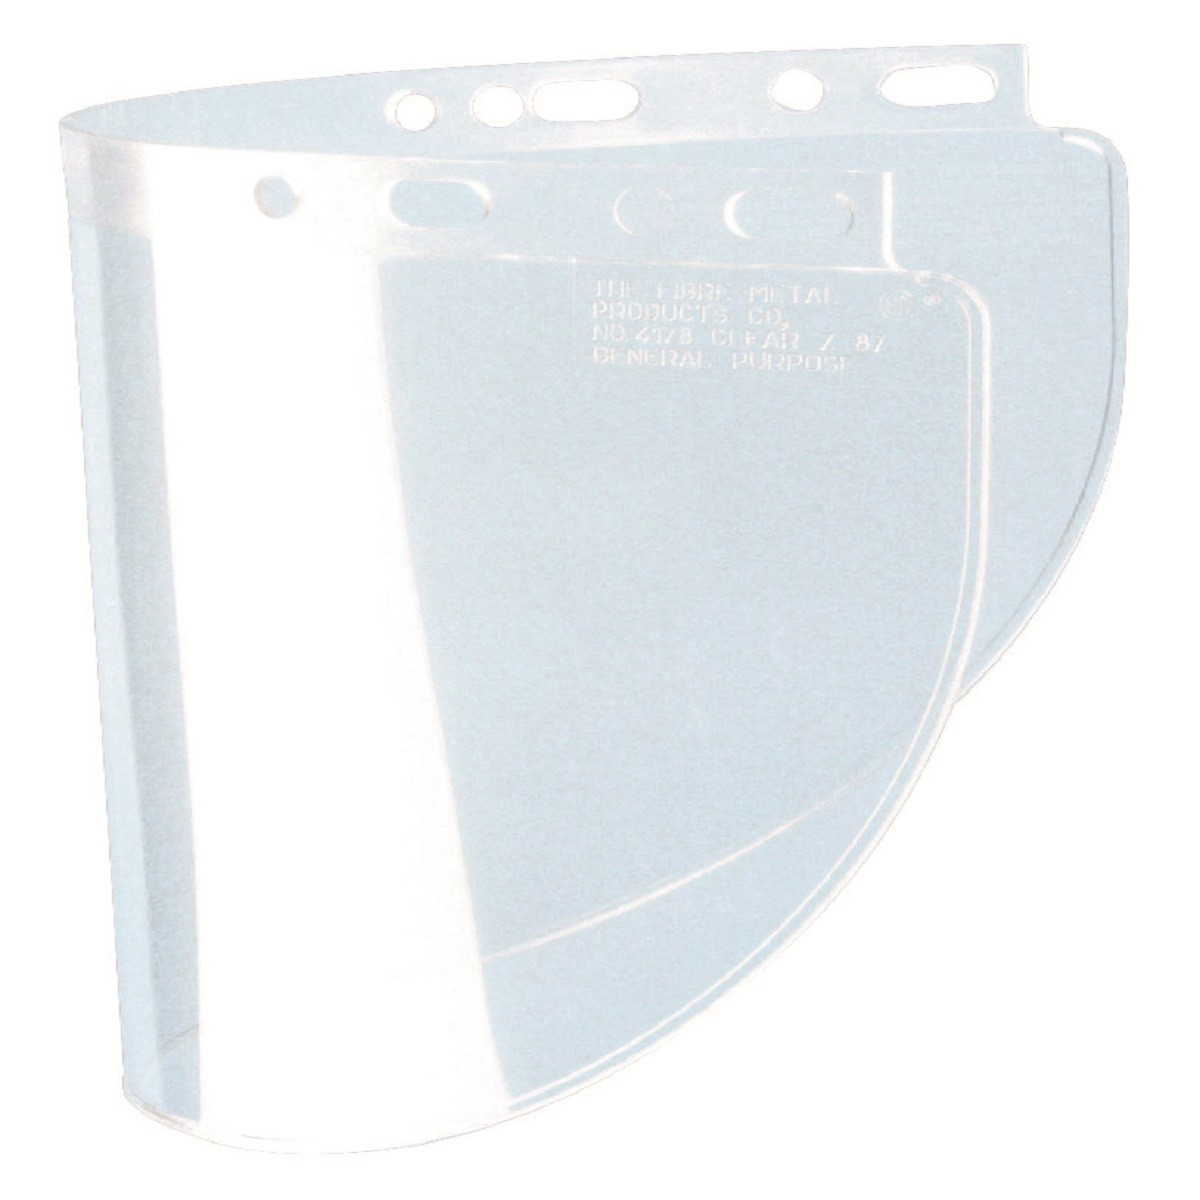 Honeywell Safety Welding Face Shield Shade 5 IR 8x16-1/2" FIBRE-METAL 4178IRUV5 